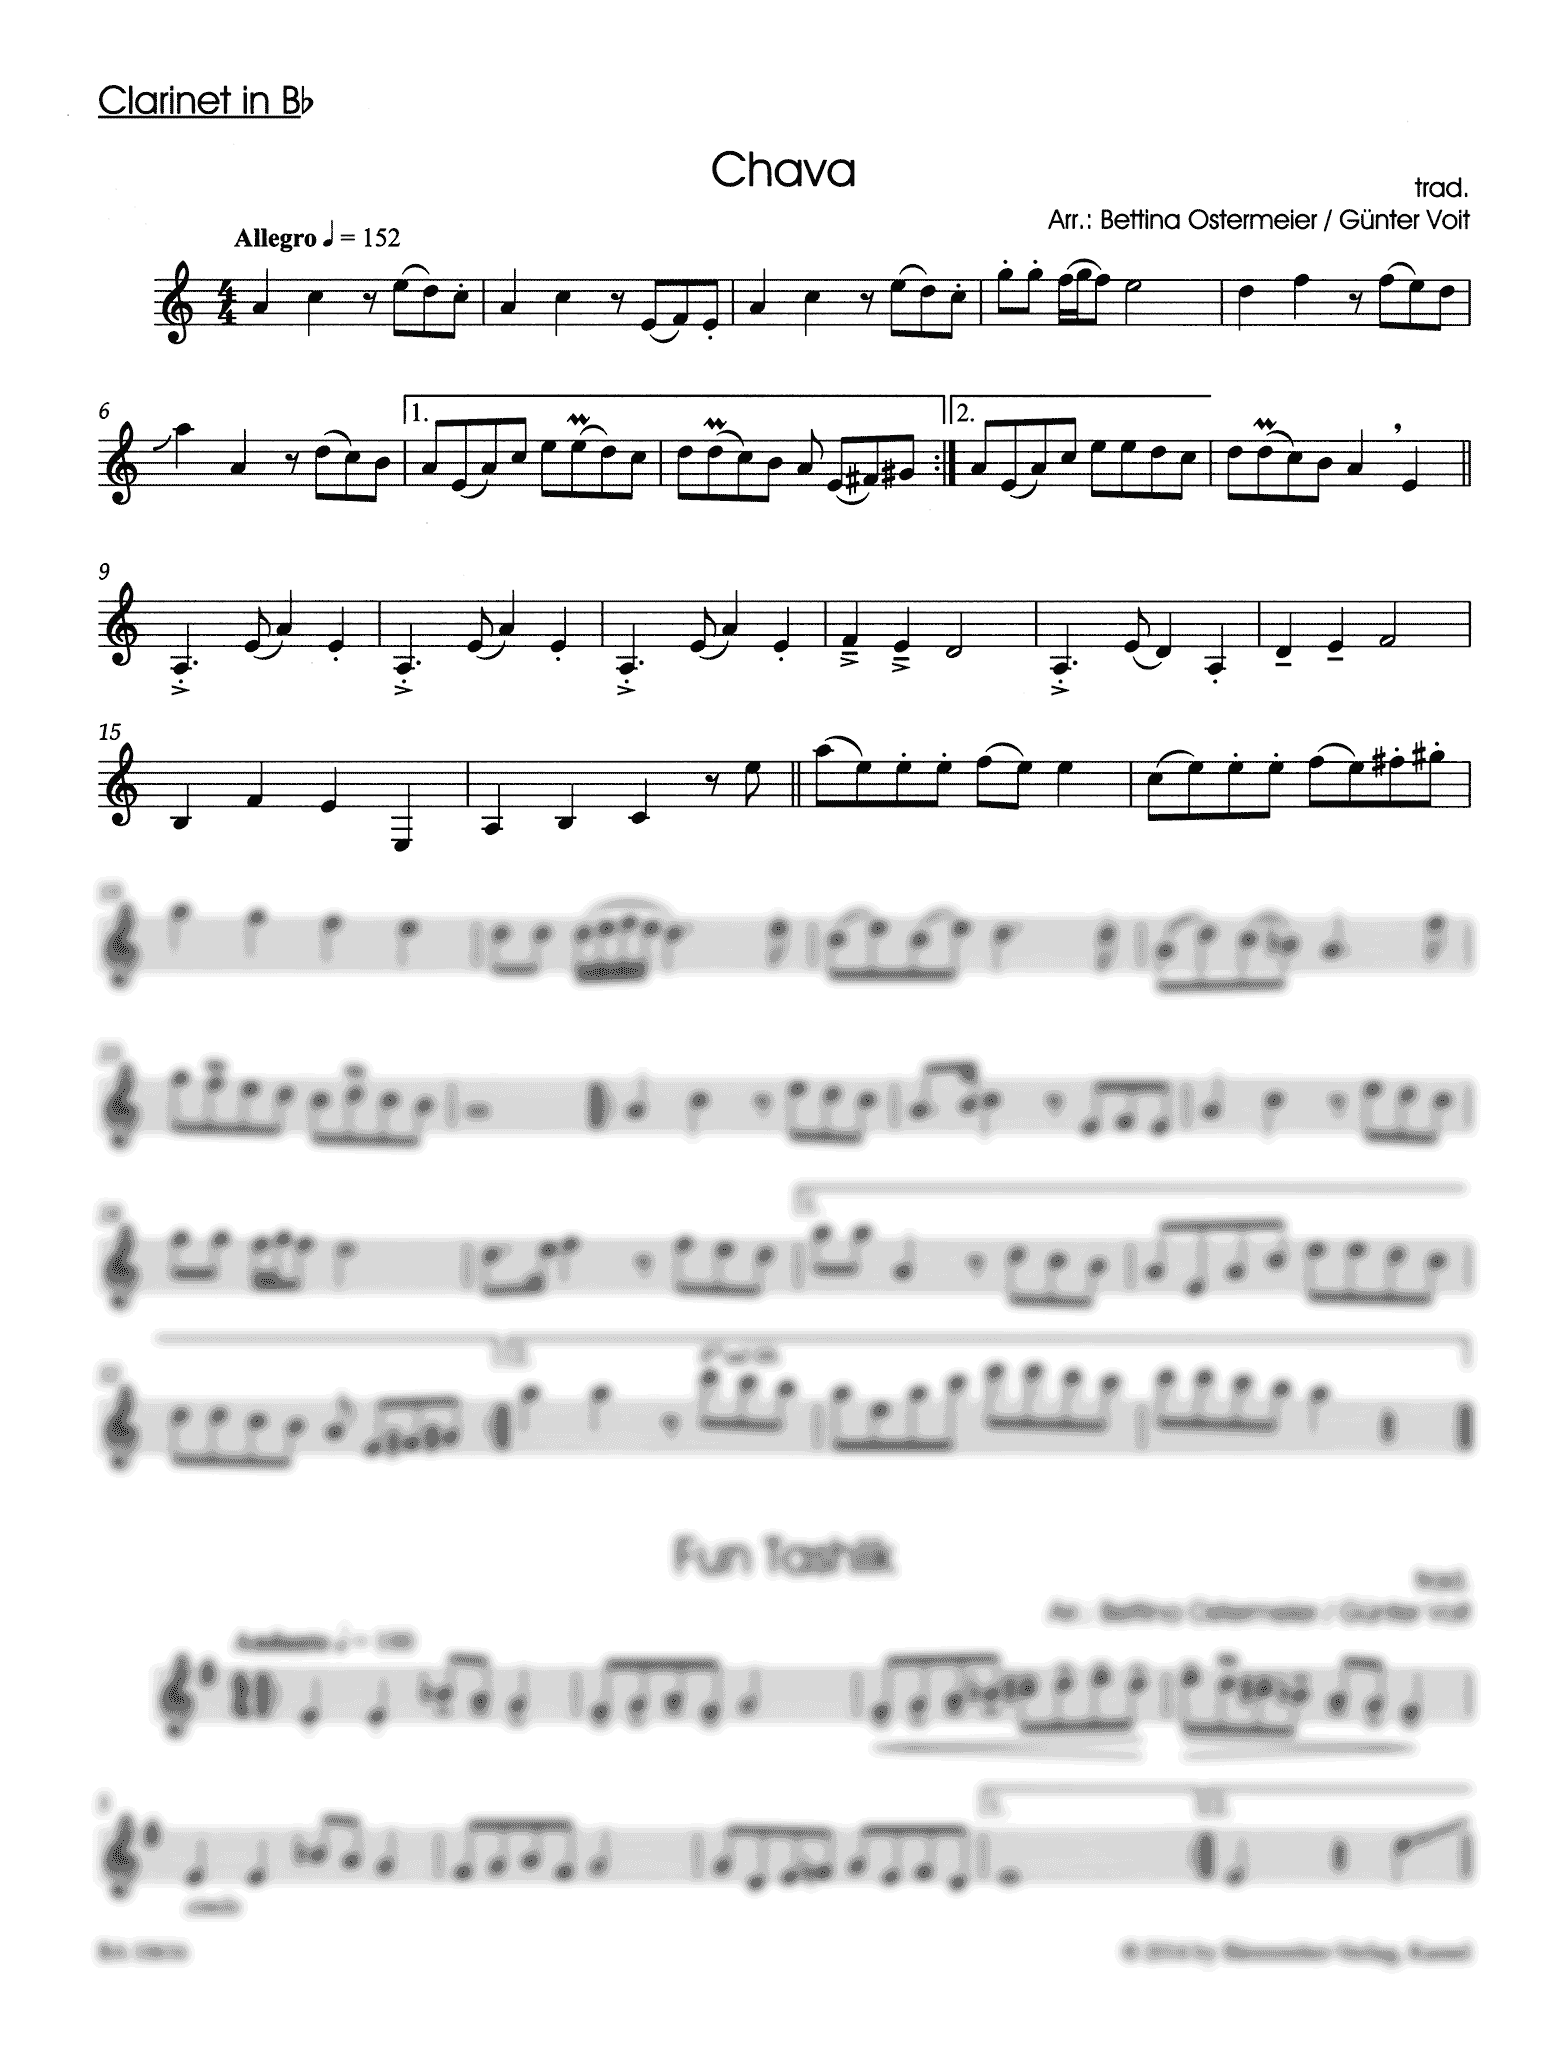 Klezmer collection Chava clarinet part